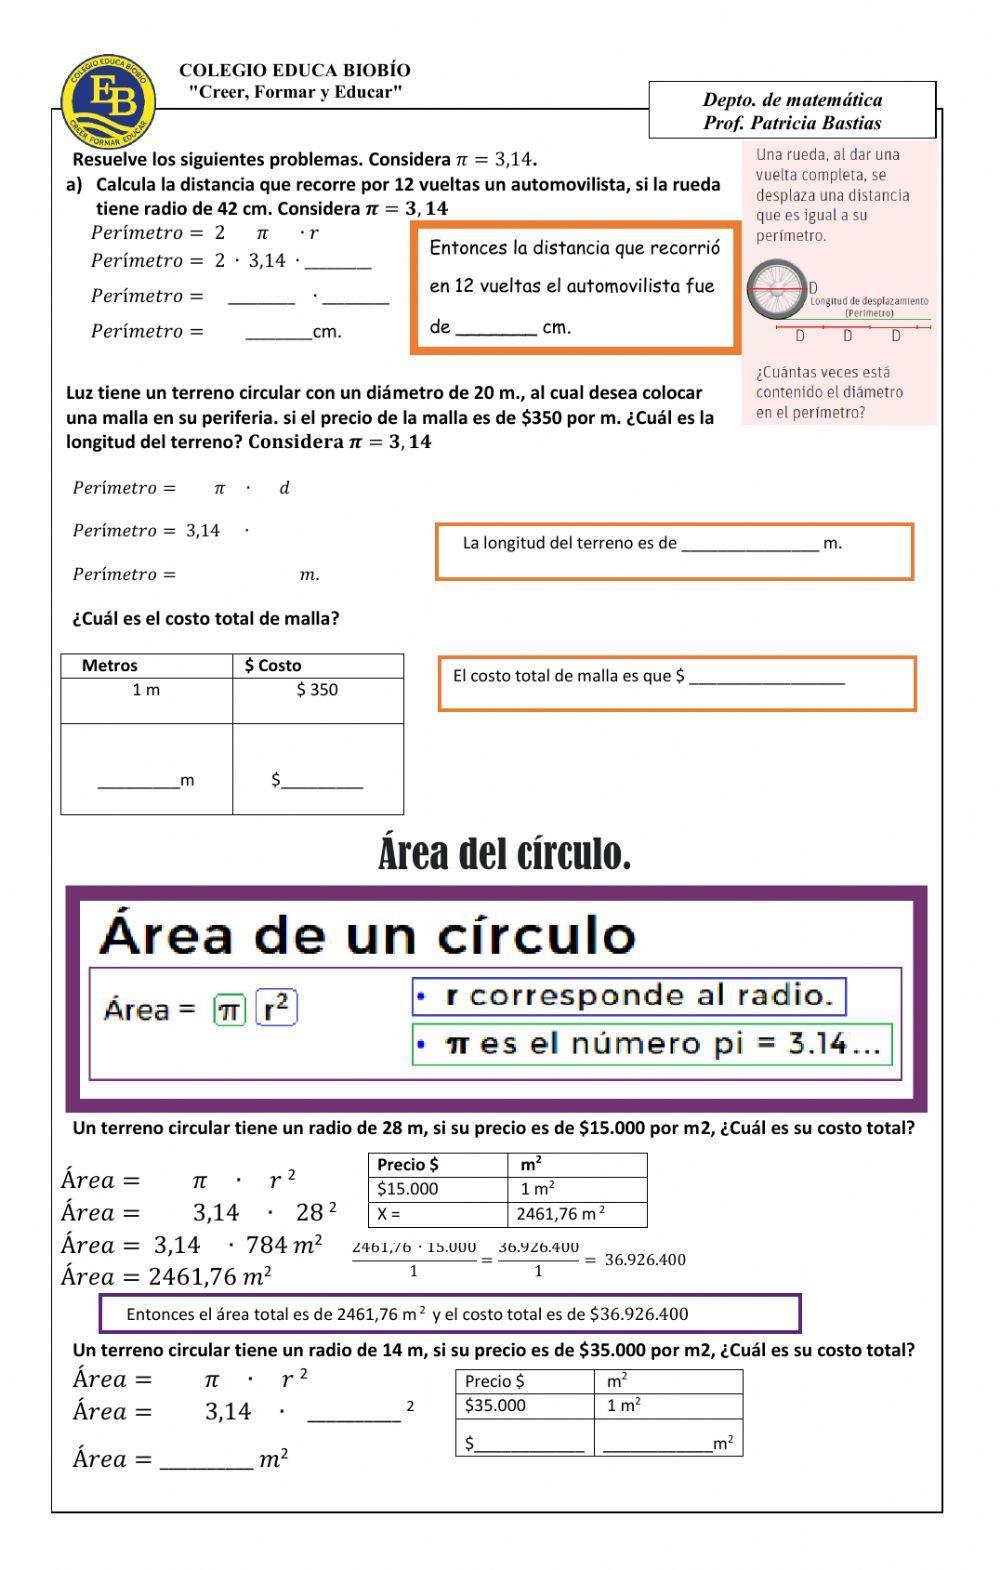 CLASE 27 Resolver problemas geométricos, estimando el perímetro de la circunferencia y área del círculo